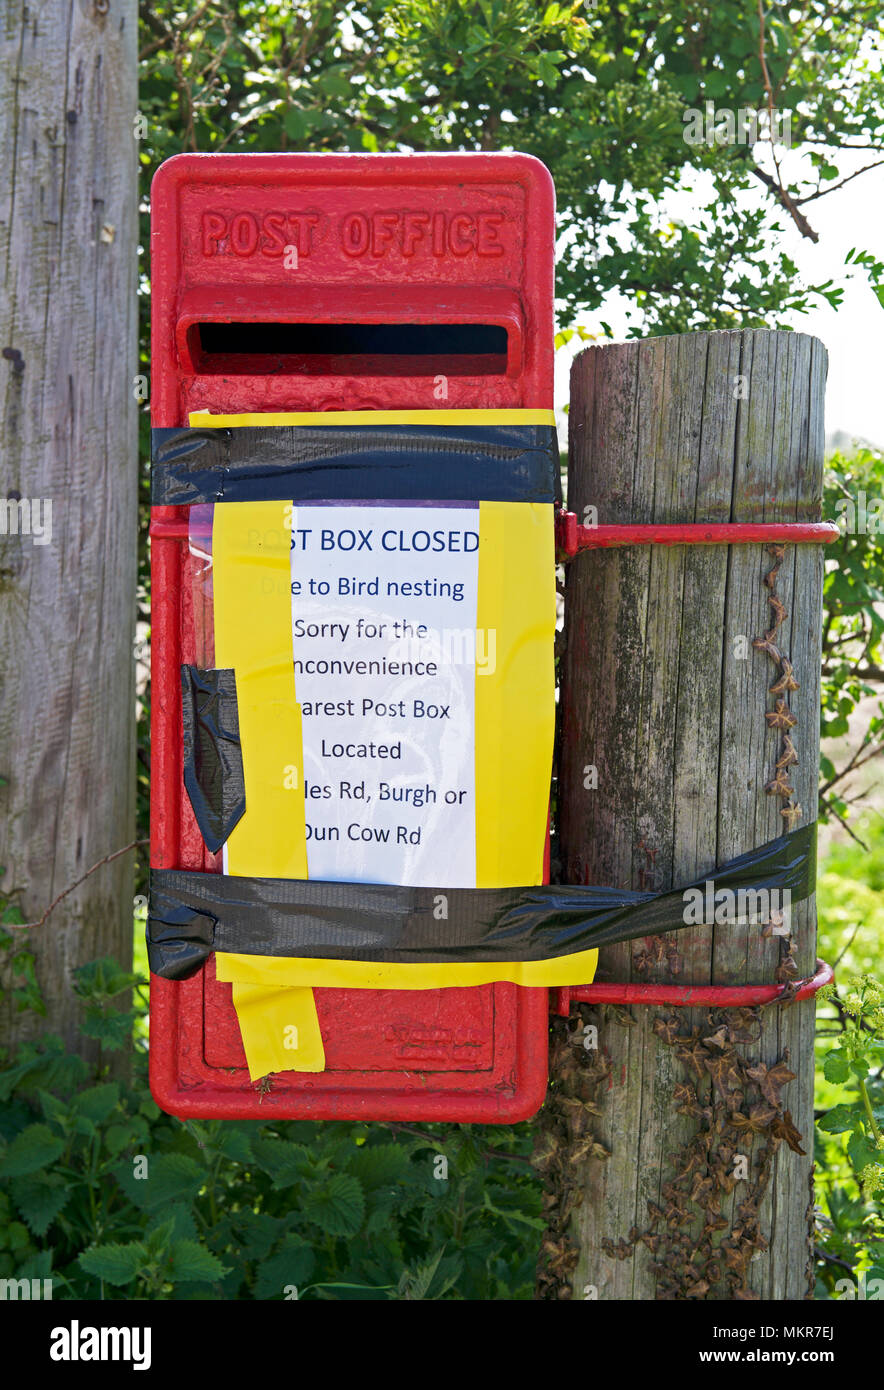 Royal Mail Post-box, nicht verwendet werden, da die Vögel nisten in Es  sind, England Großbritannien Stockfotografie - Alamy